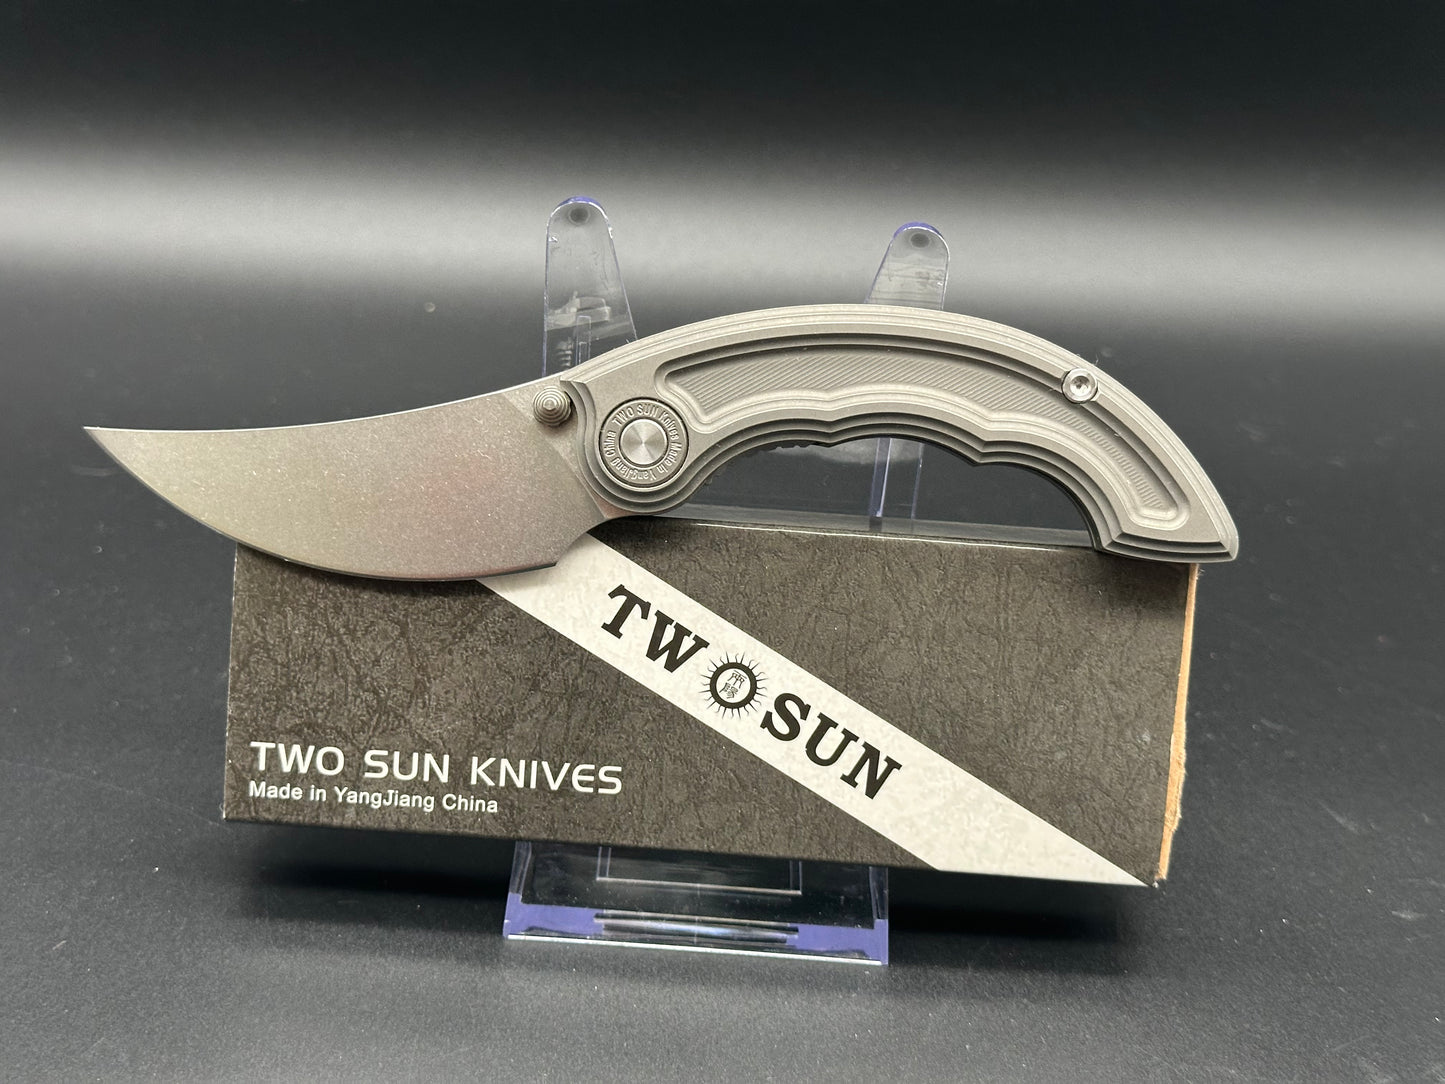 TwoSun TS325 titanium handle w/14c28n blade